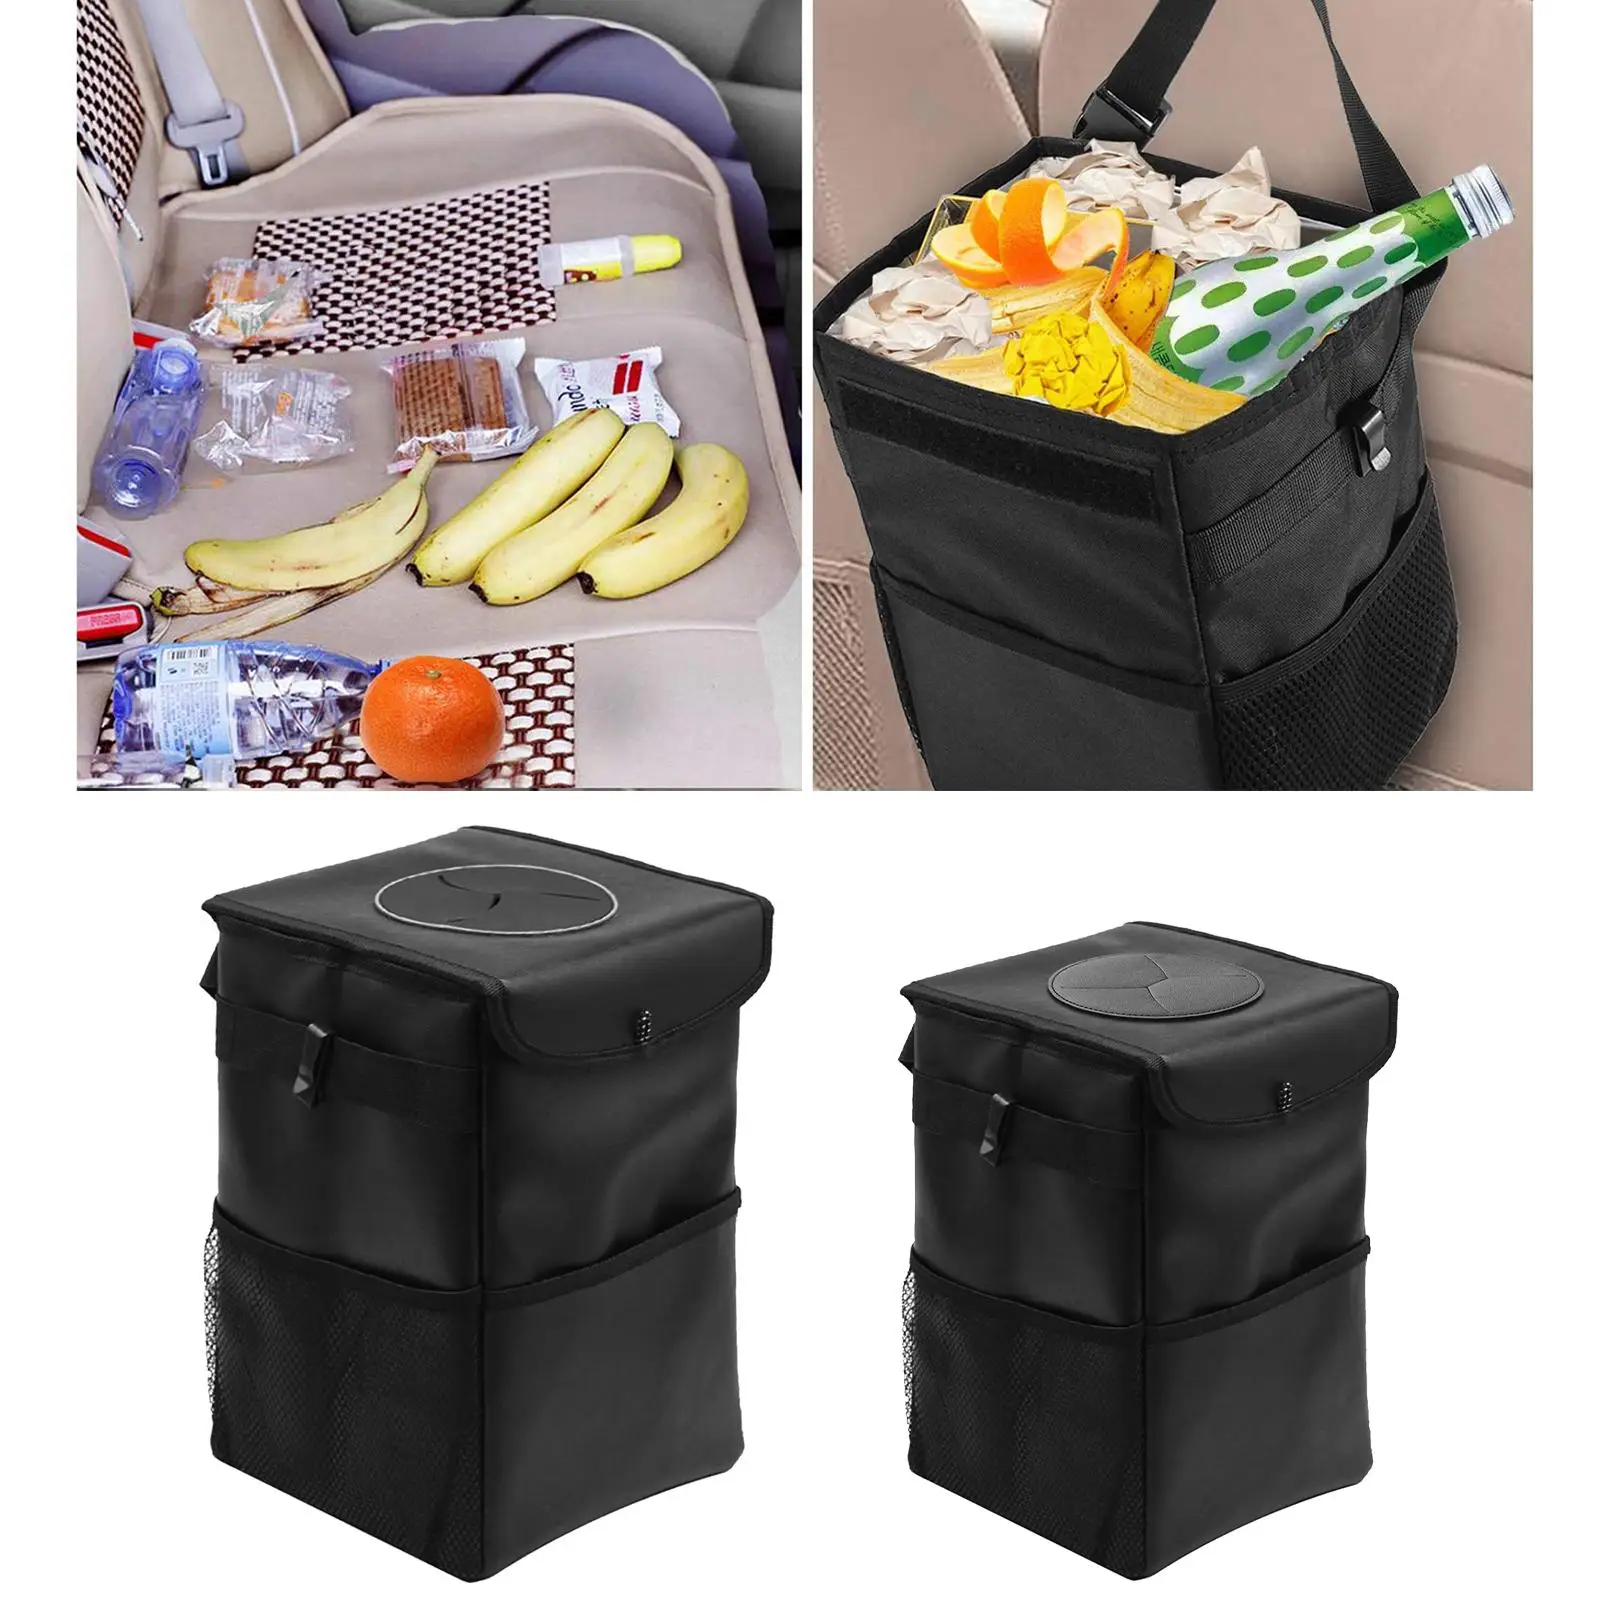 Car Garbage Bin Garbage Bin Seat Waterproof Trash Basket Holder Bag